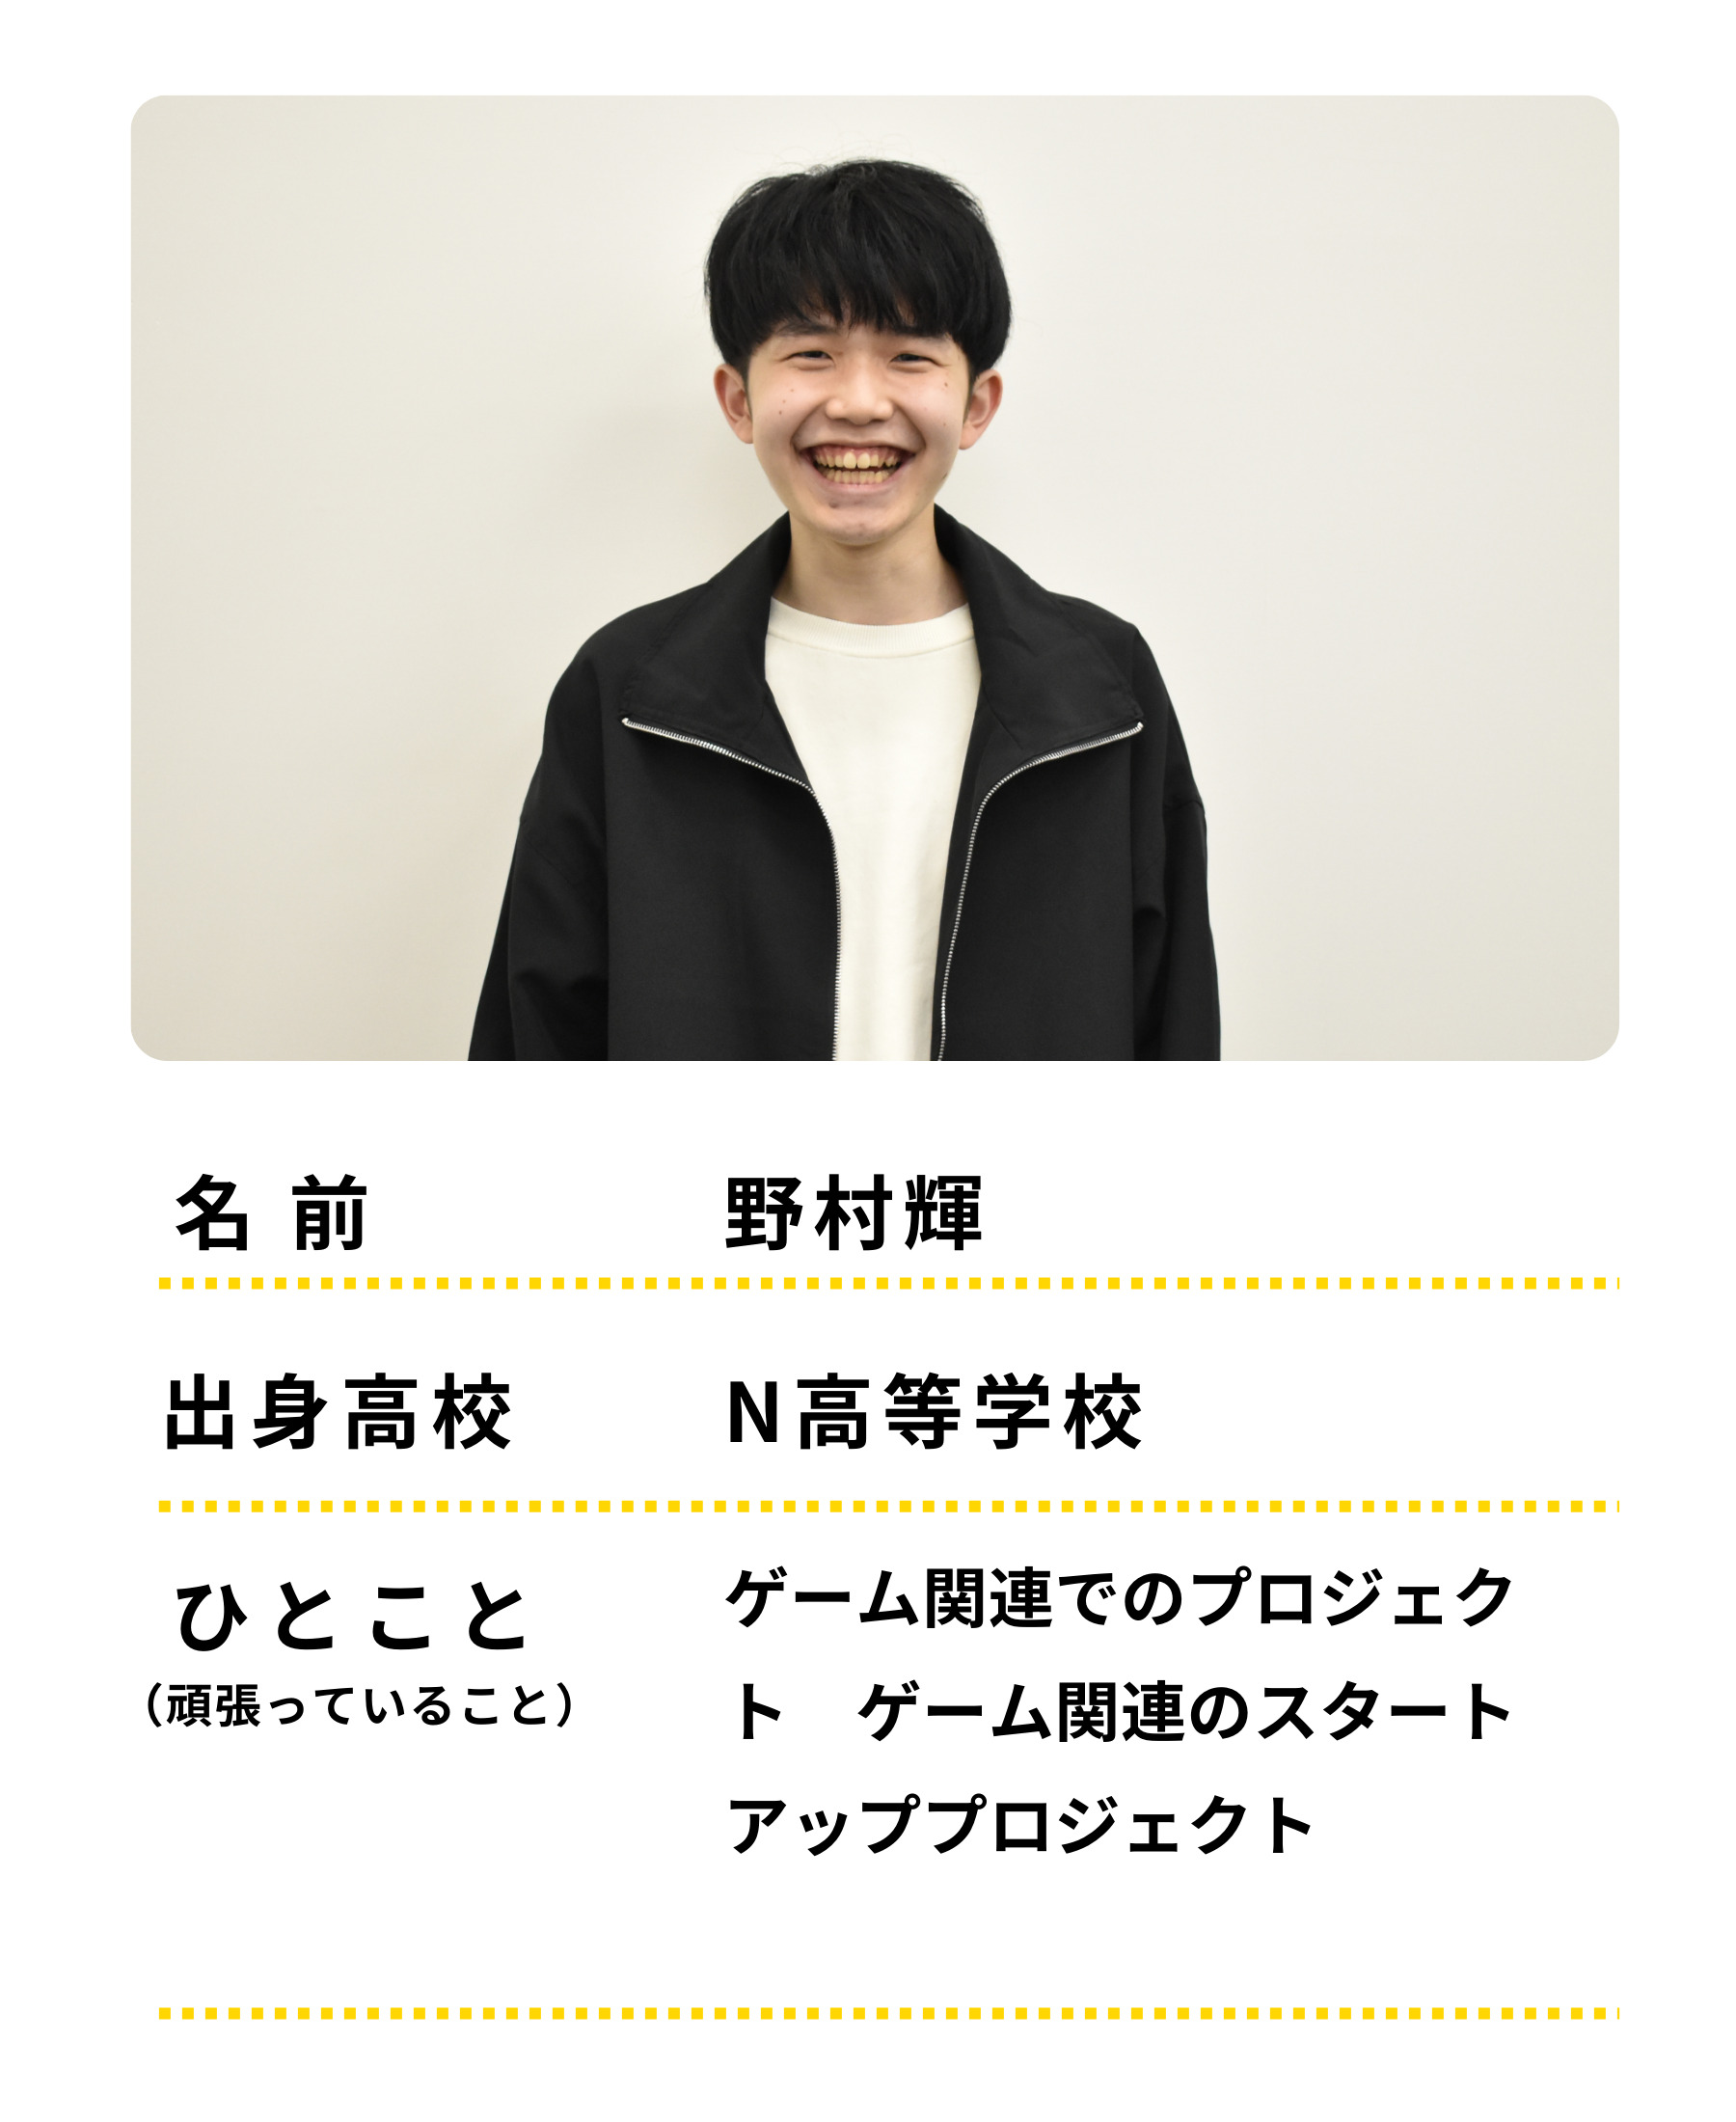 名前：野村輝　出身高校：Ｎ高等学校　ひとこと：ゲーム関連でのプロジェクト　げーむかんれんのスタートアッププロジェクトをがんばっています。